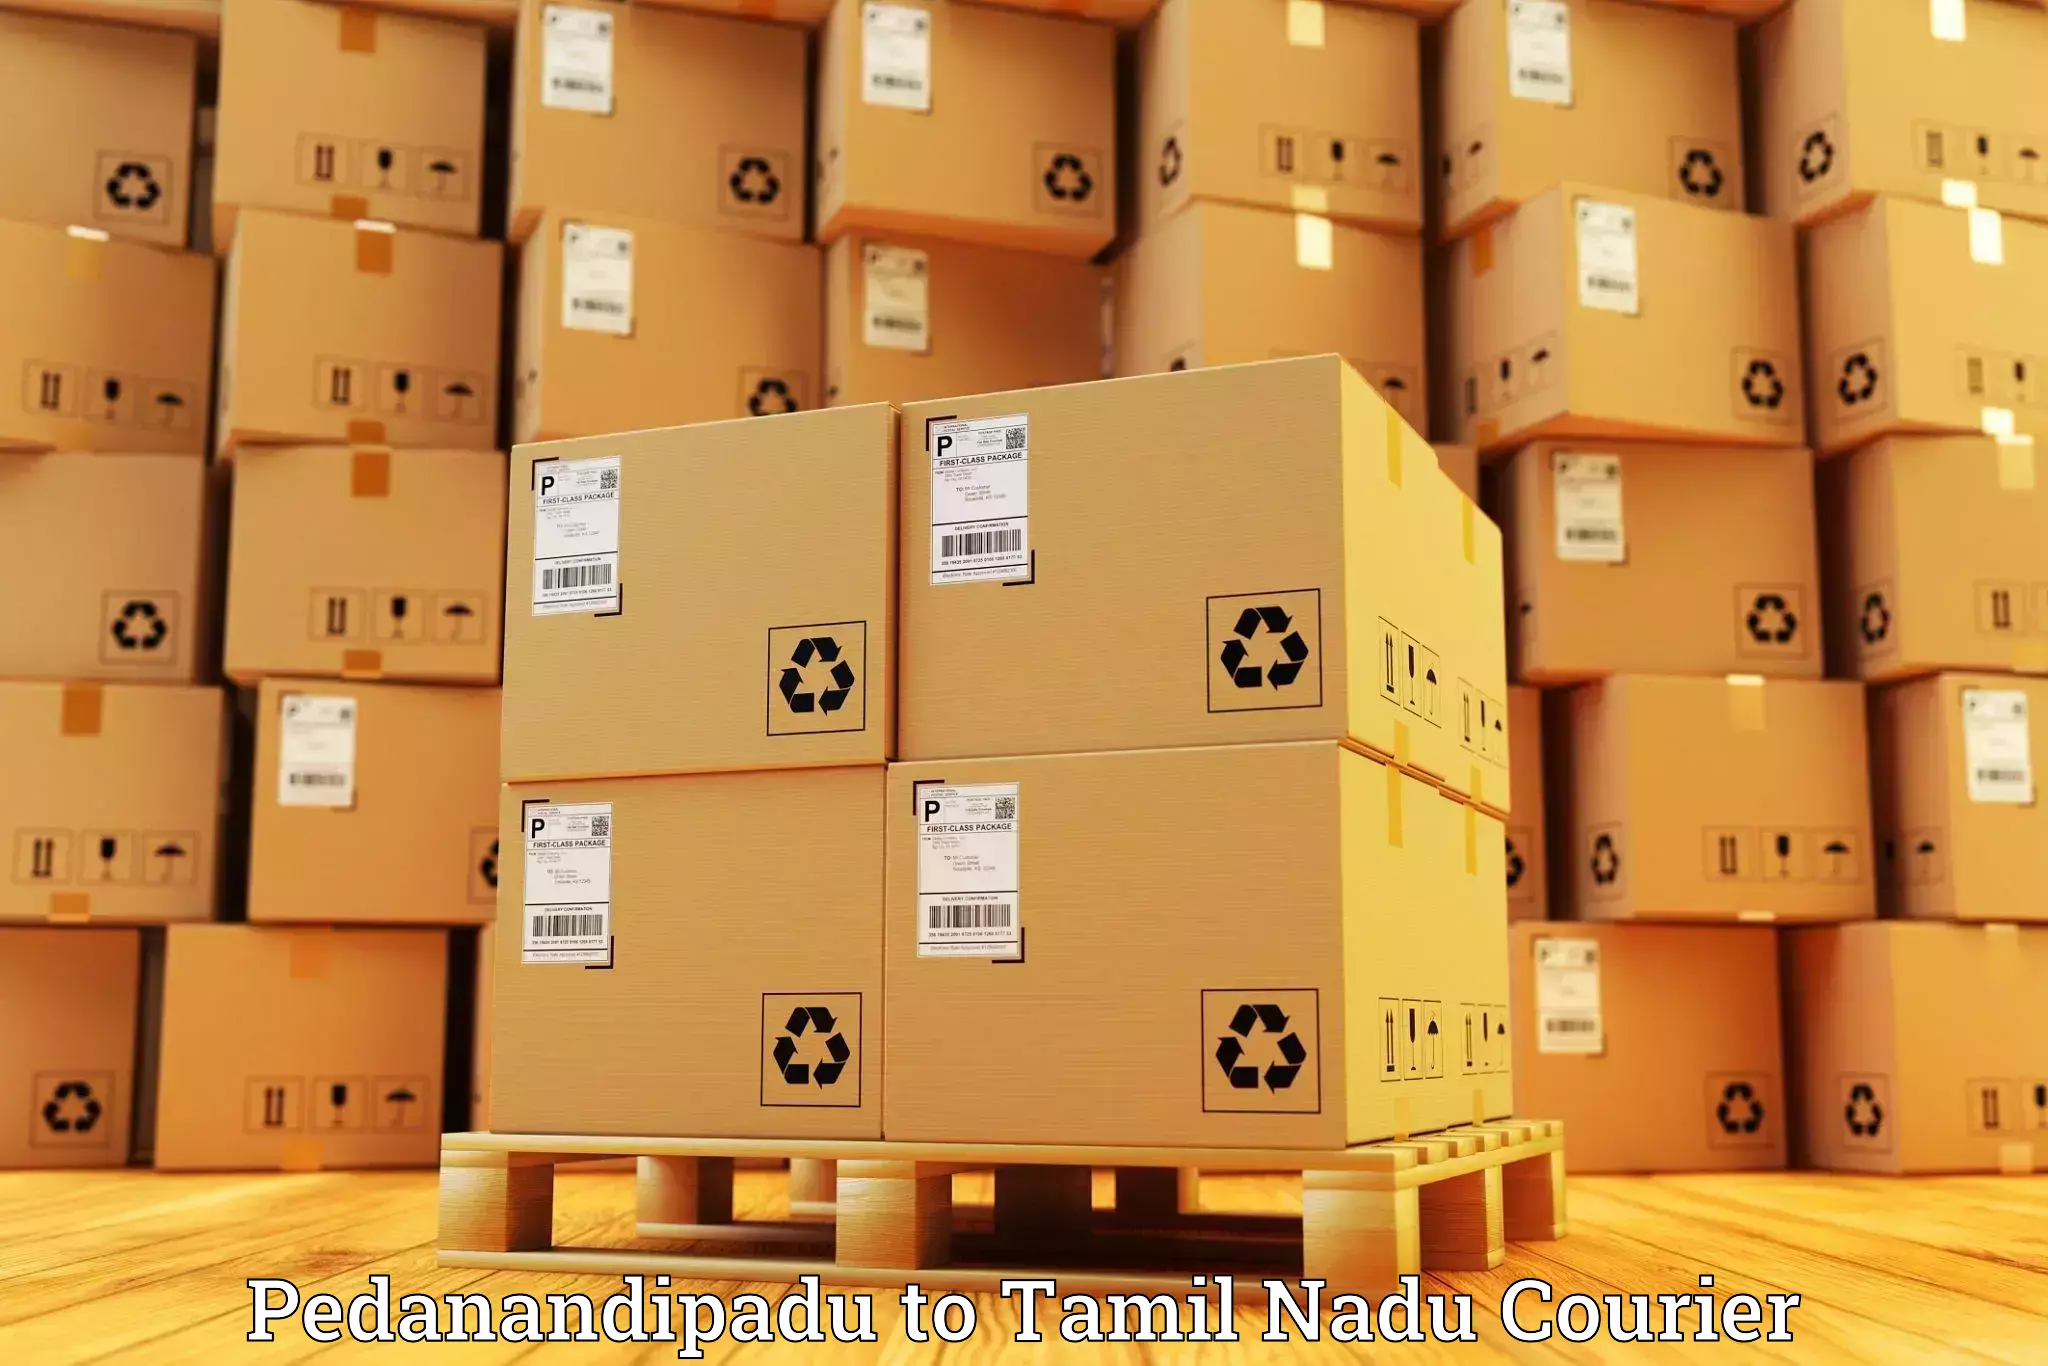 Personalized courier experiences Pedanandipadu to Tiruchirappalli